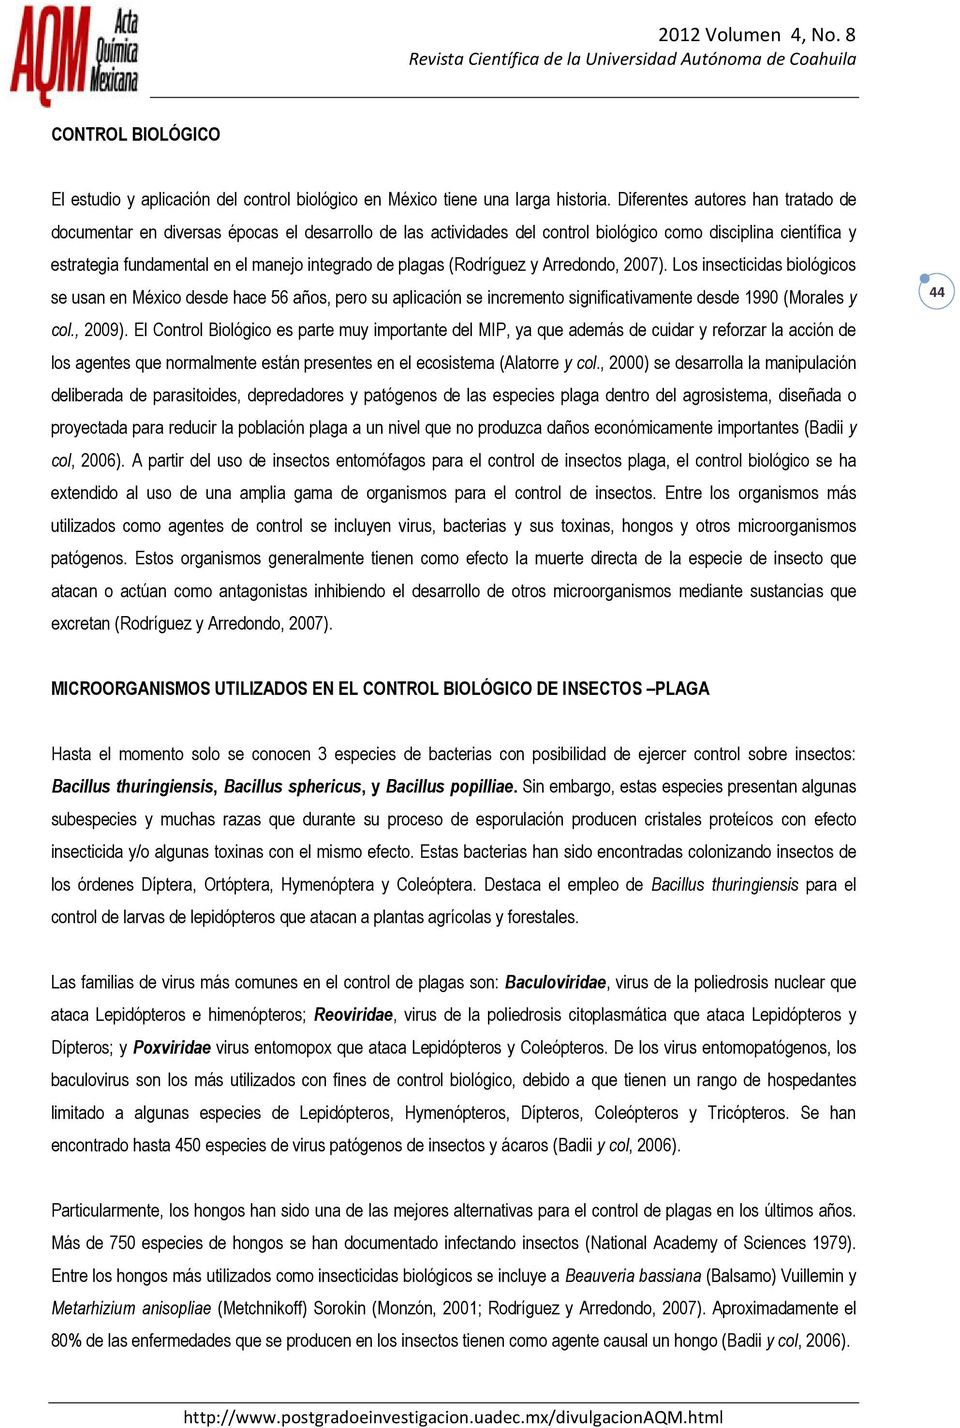 plagas (Rodríguez y Arredondo, 2007). Los insecticidas biológicos se usan en México desde hace 56 años, pero su aplicación se incremento significativamente desde 1990 (Morales y col., 2009).